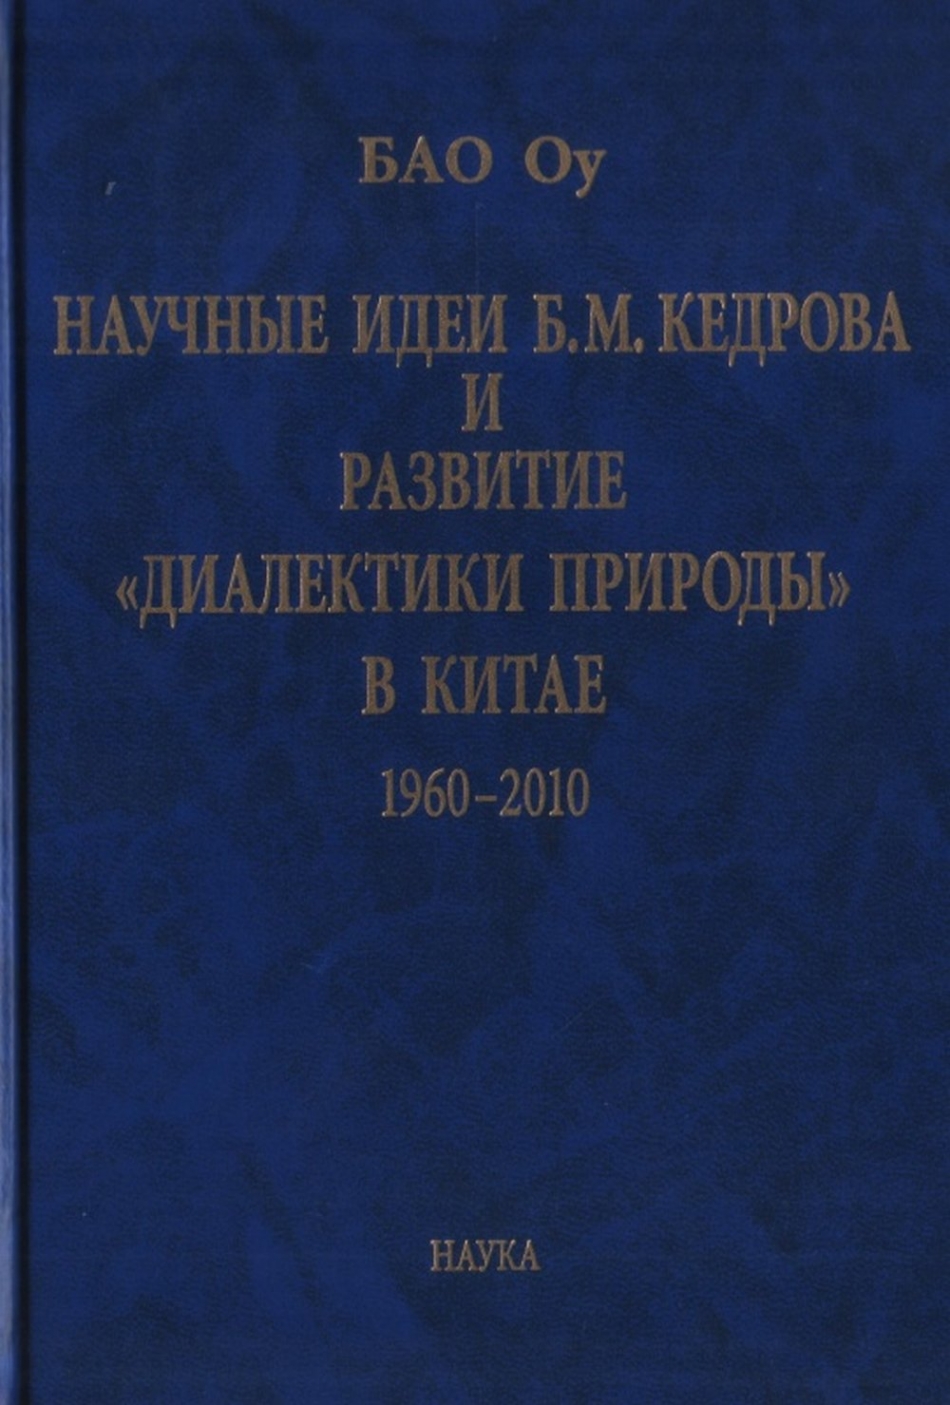     ..    " "  : 1960-2010 